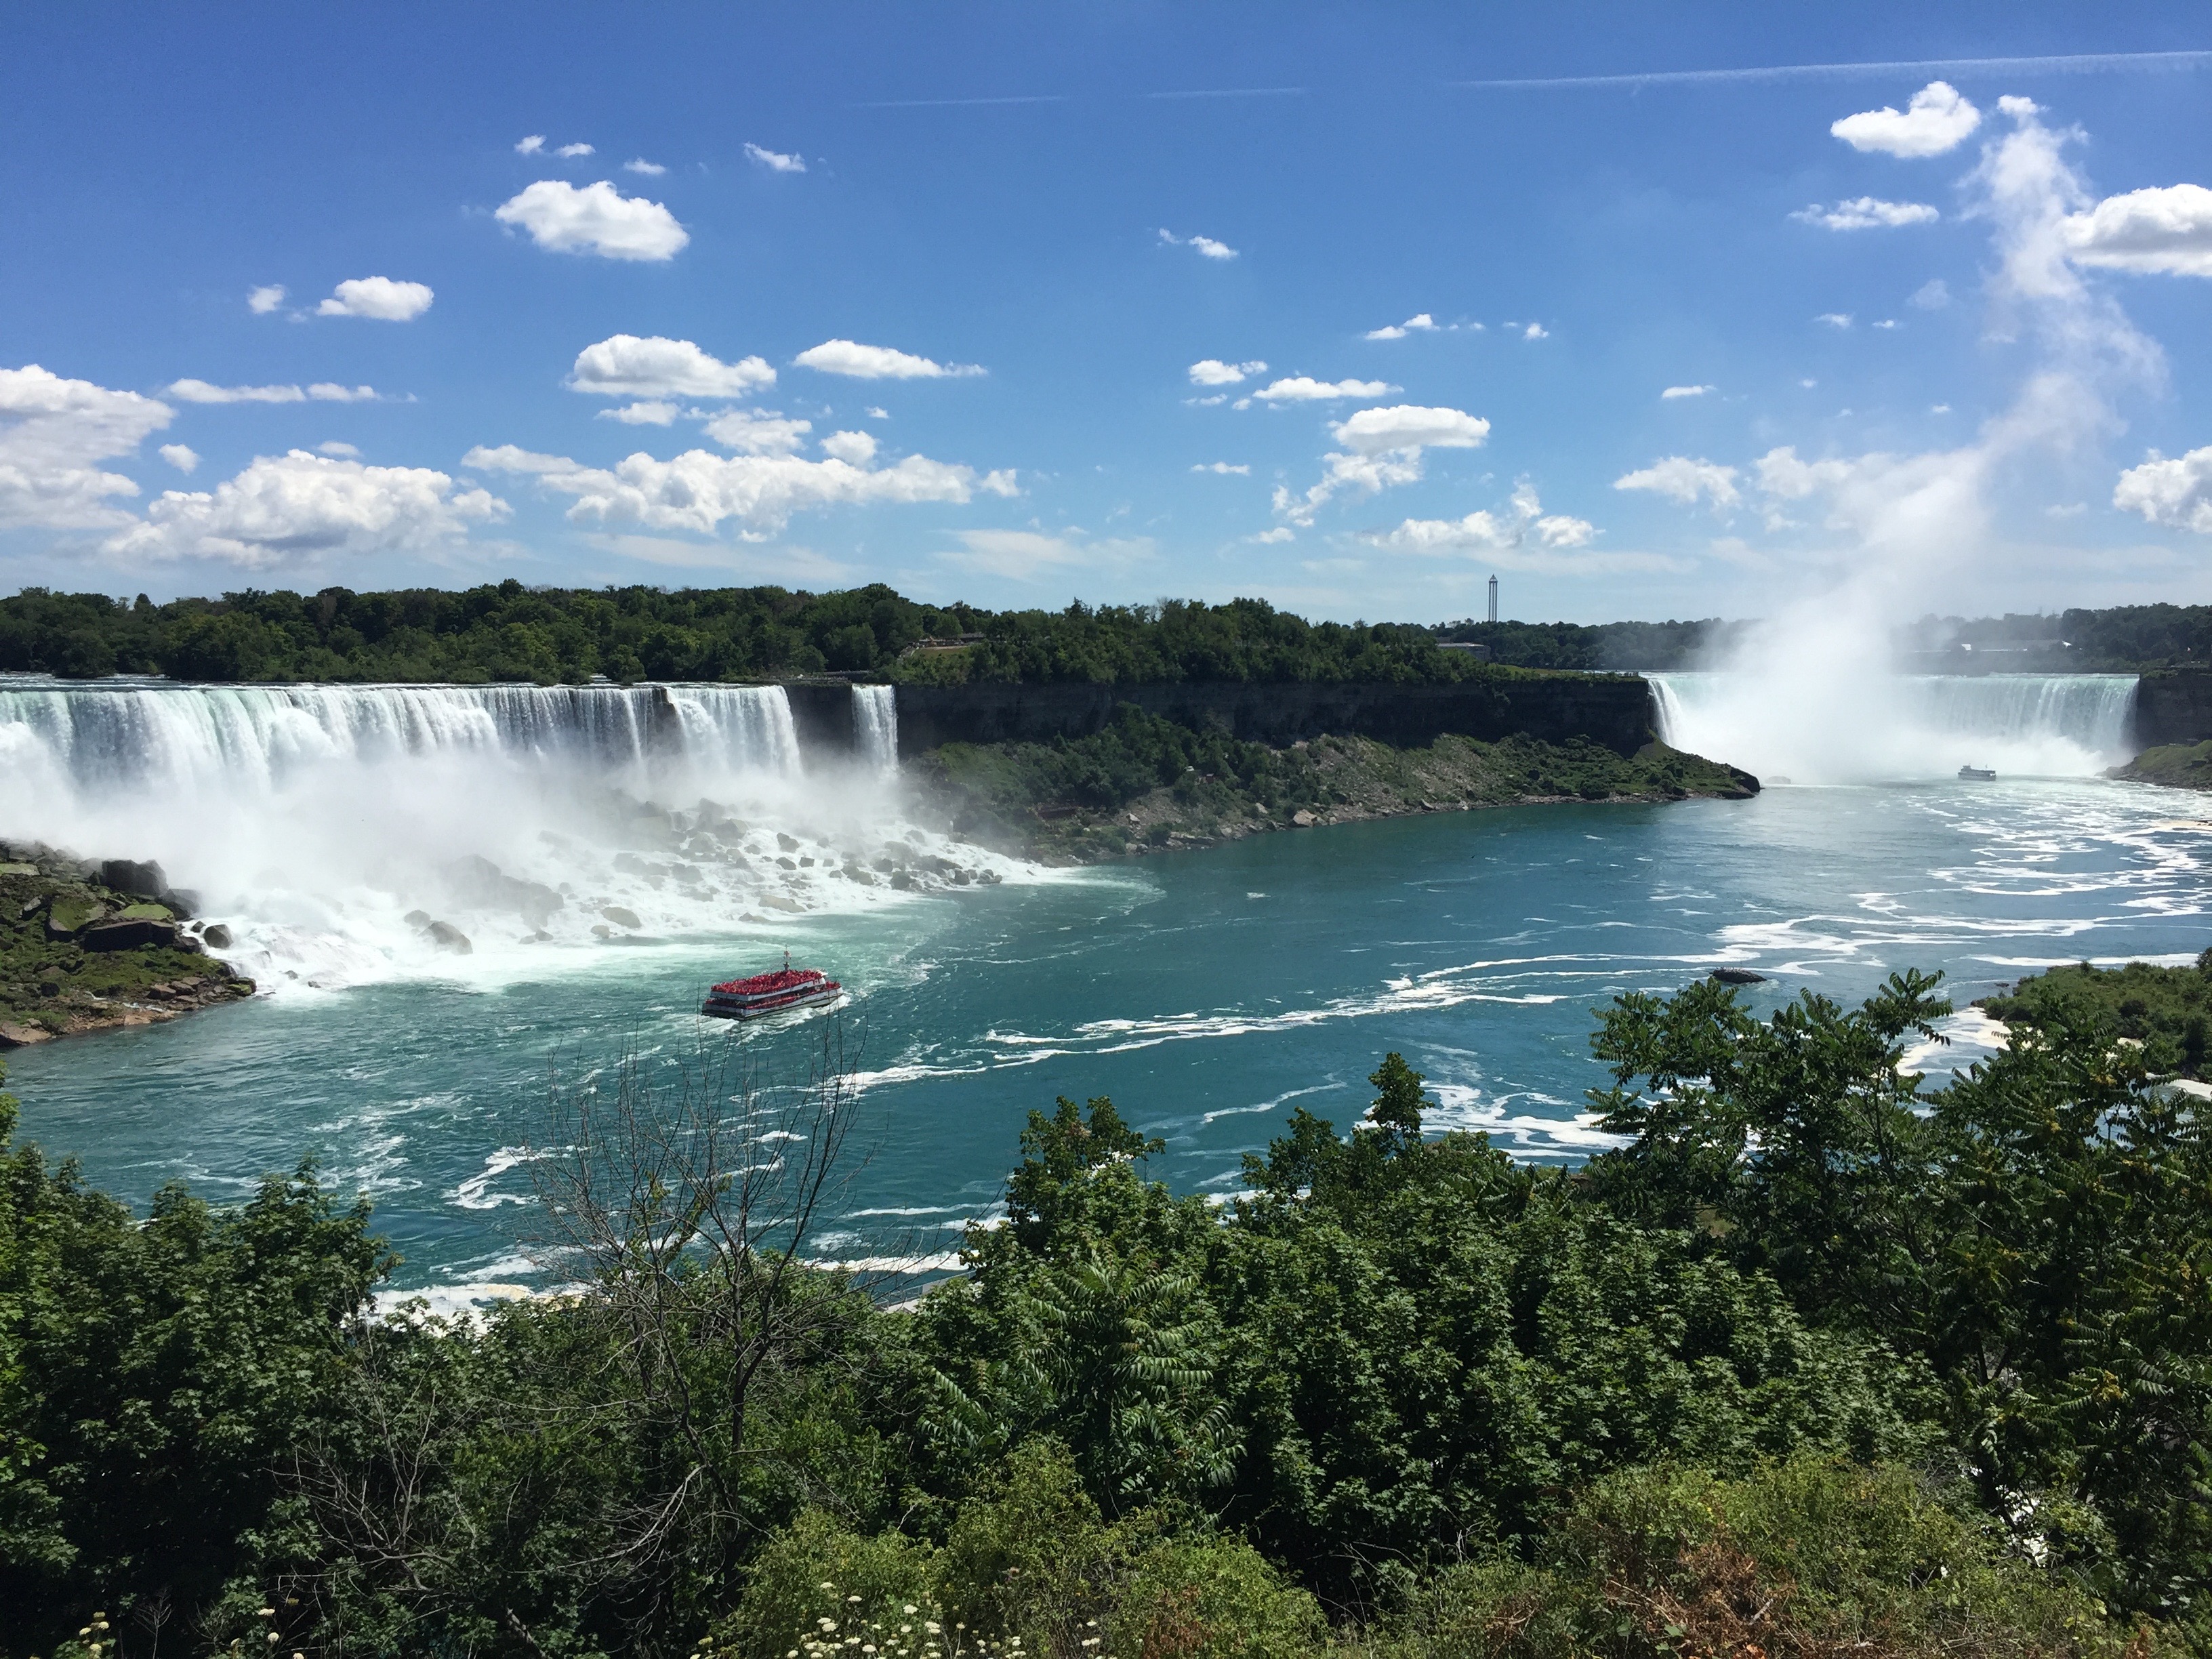 The most beautiful thing I saw at Niagara Falls